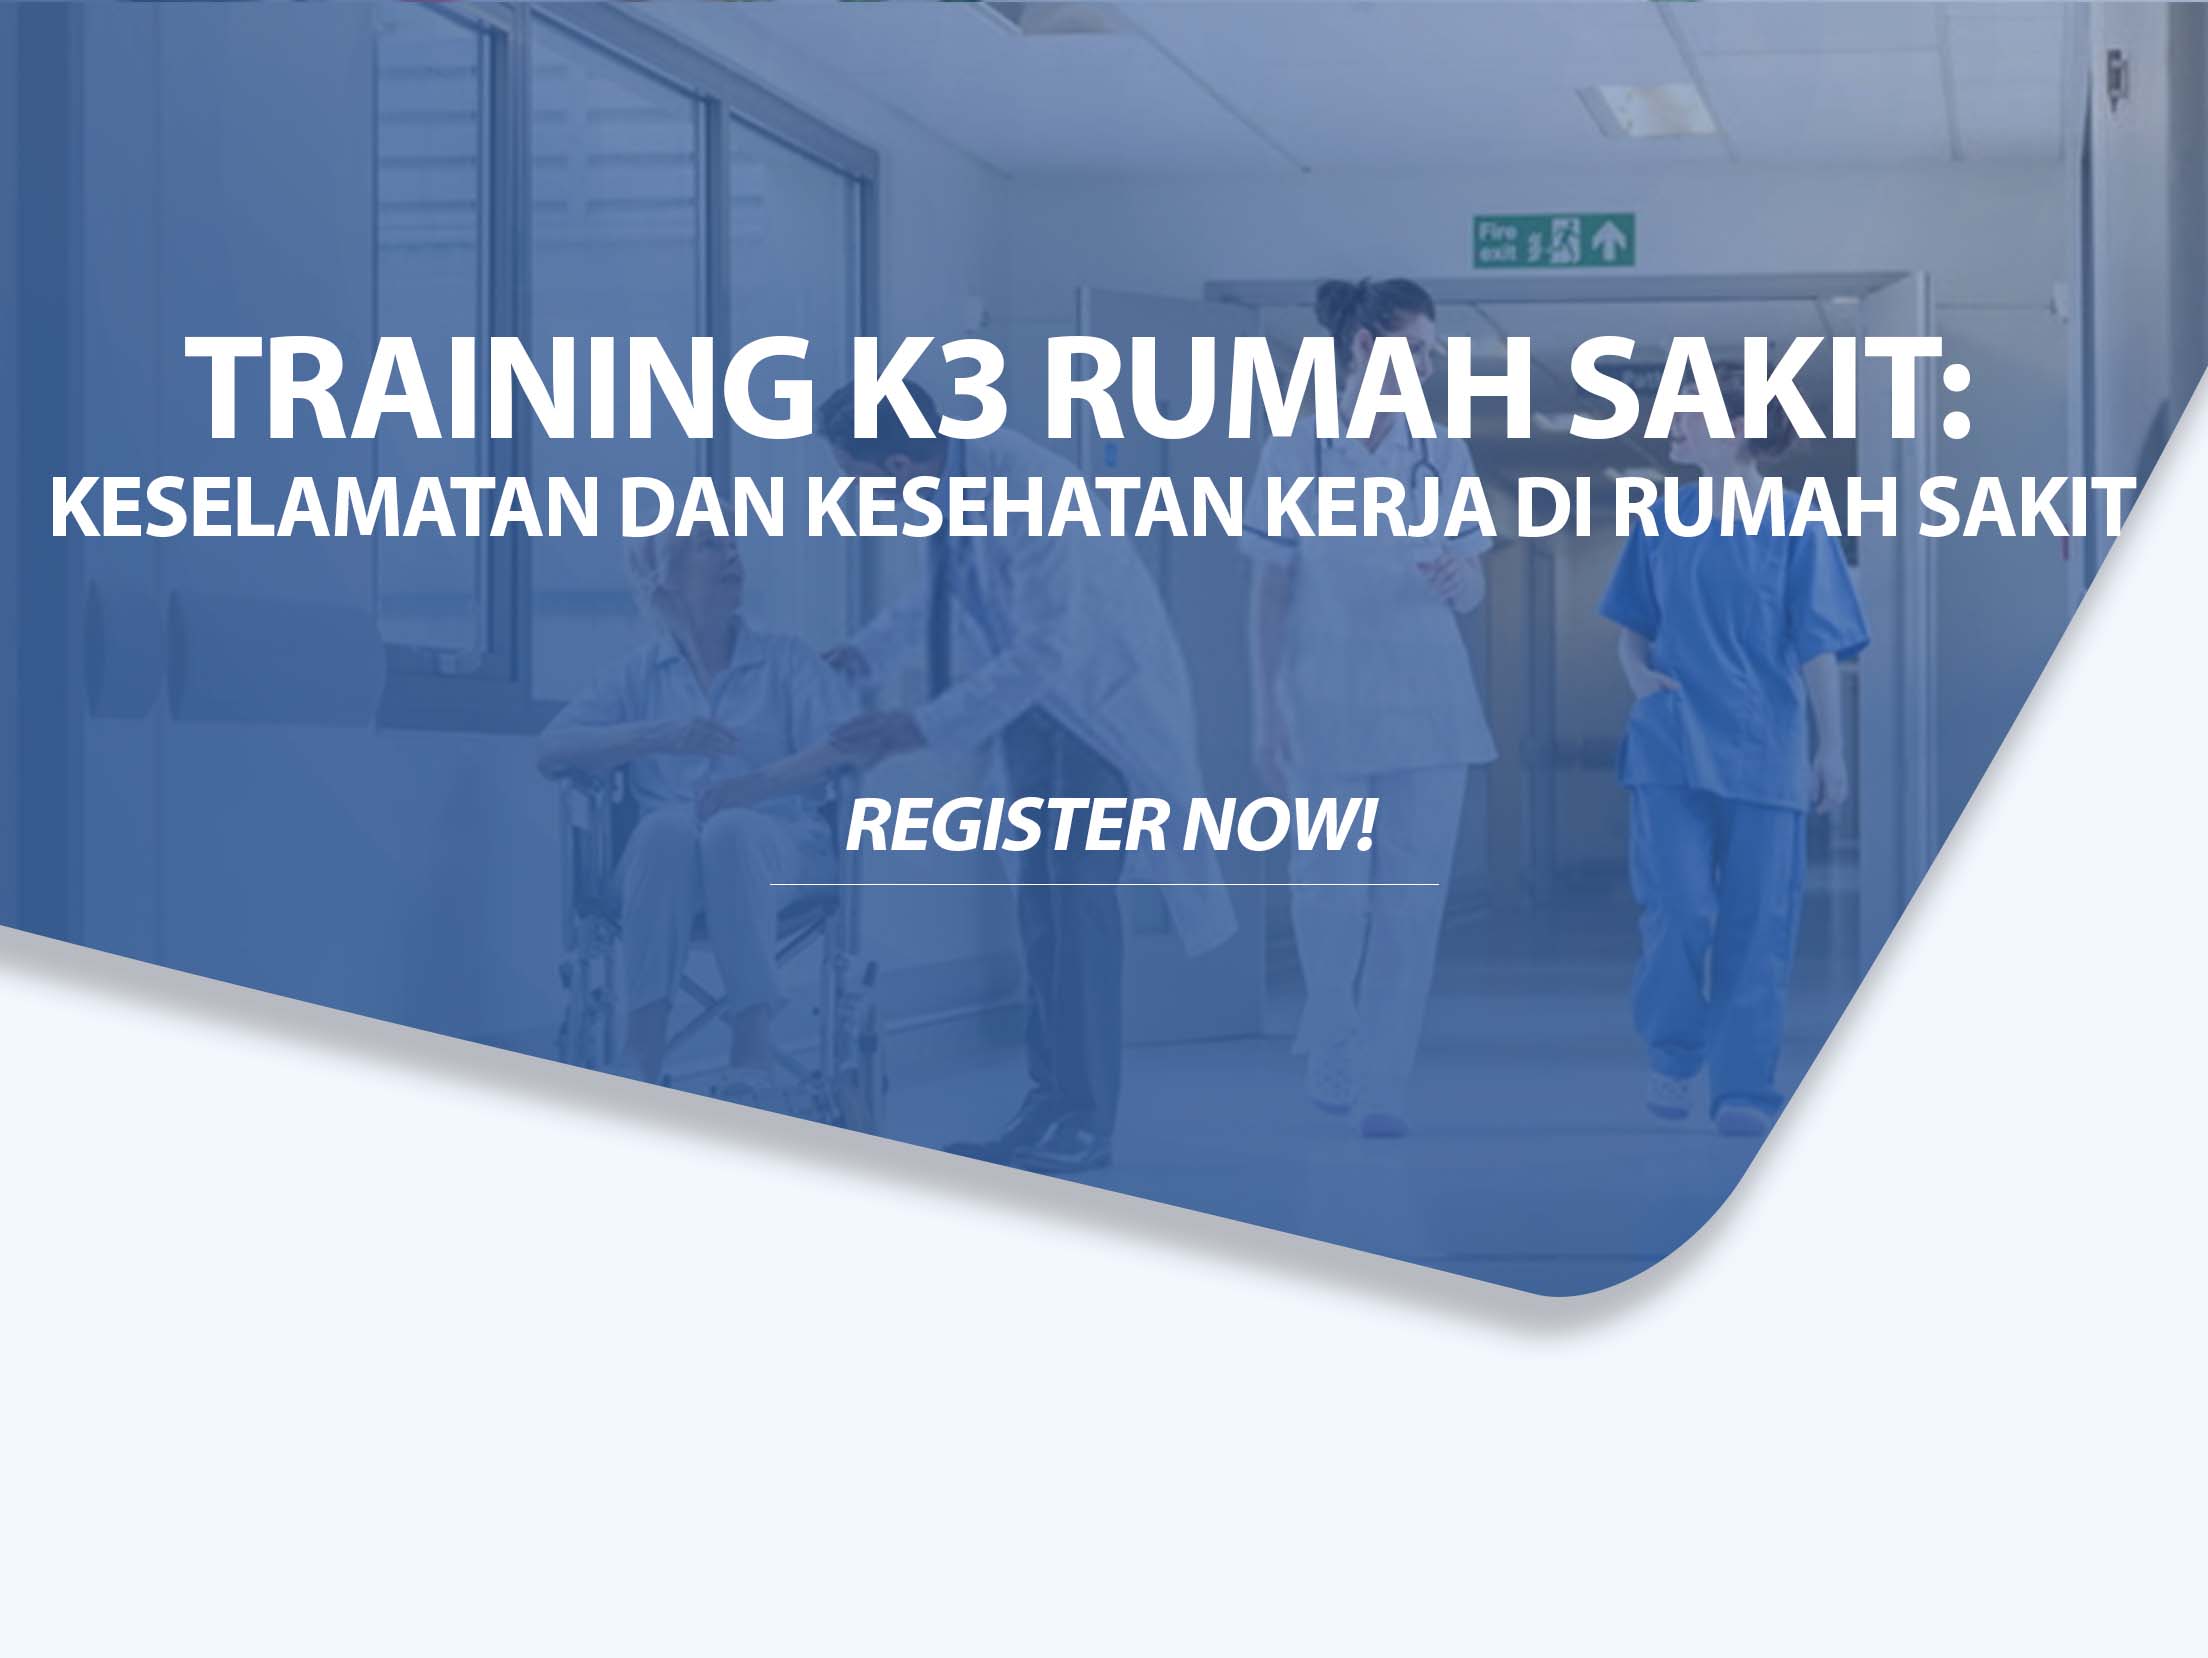 Training K3 Rumah Sakit Keselamatan dan Kesehatan Kerja di Rumah Sakit